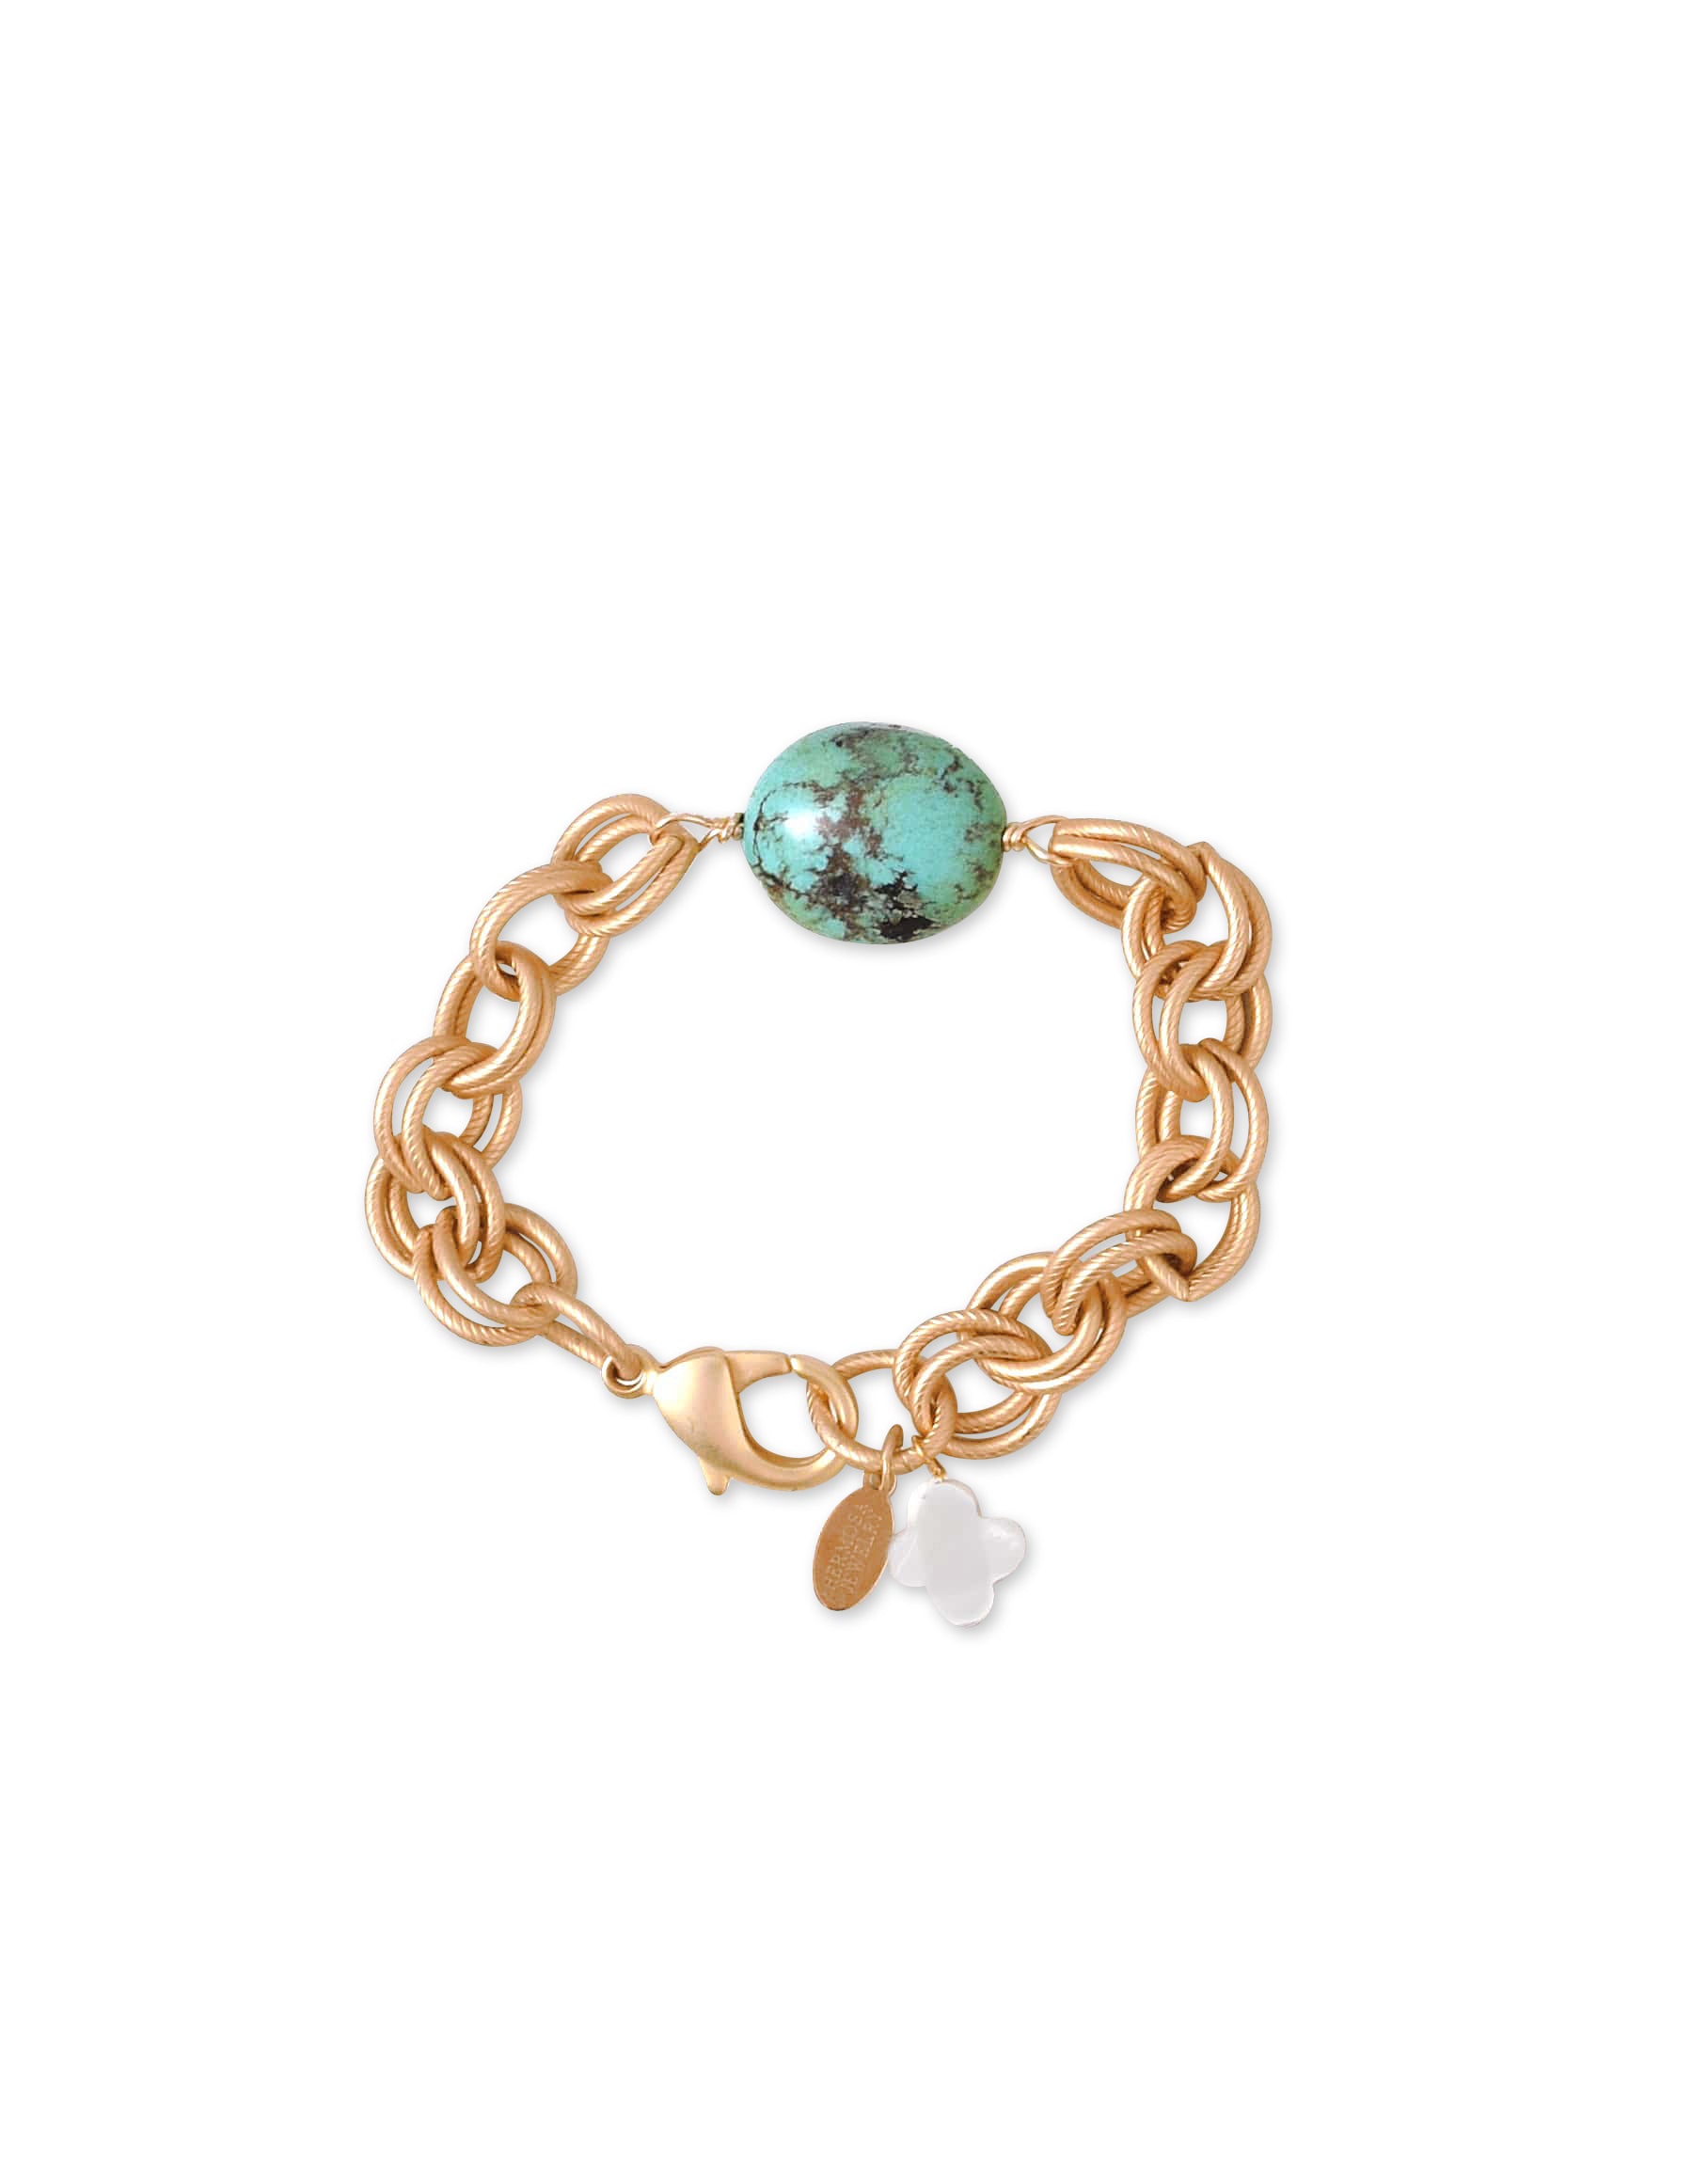 Tula Bracelet with Turquoise